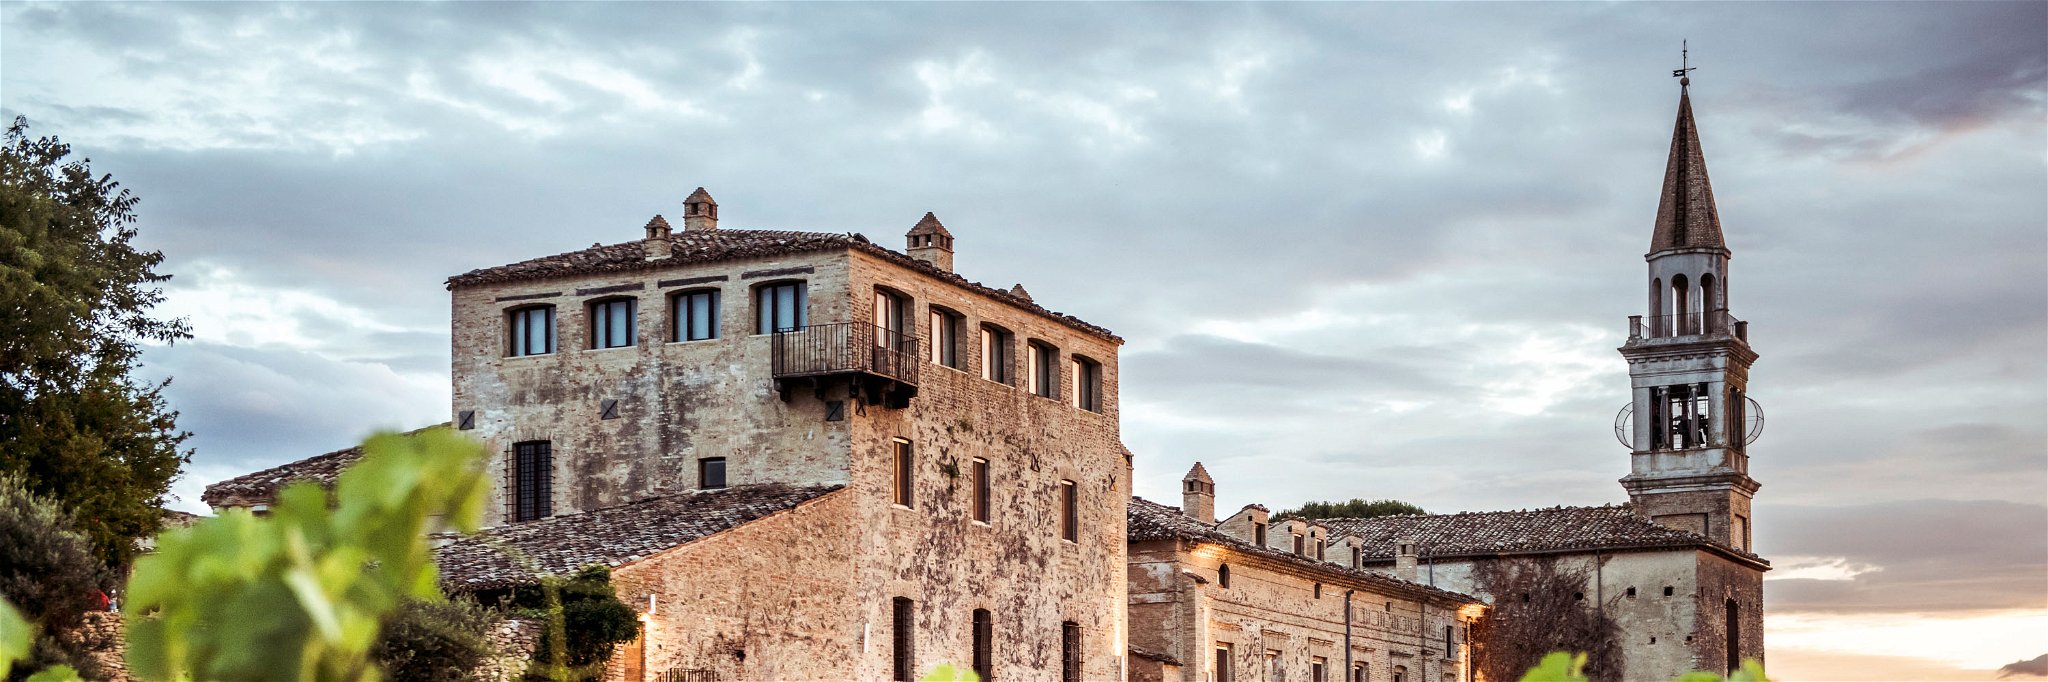 Masciarelli erstand das alte Castello di Semivicoli und gestaltete es zu einem Hotel mit feinen Zimmern um. Rings um das Schloss wachsen Trebbiano-Trauben.